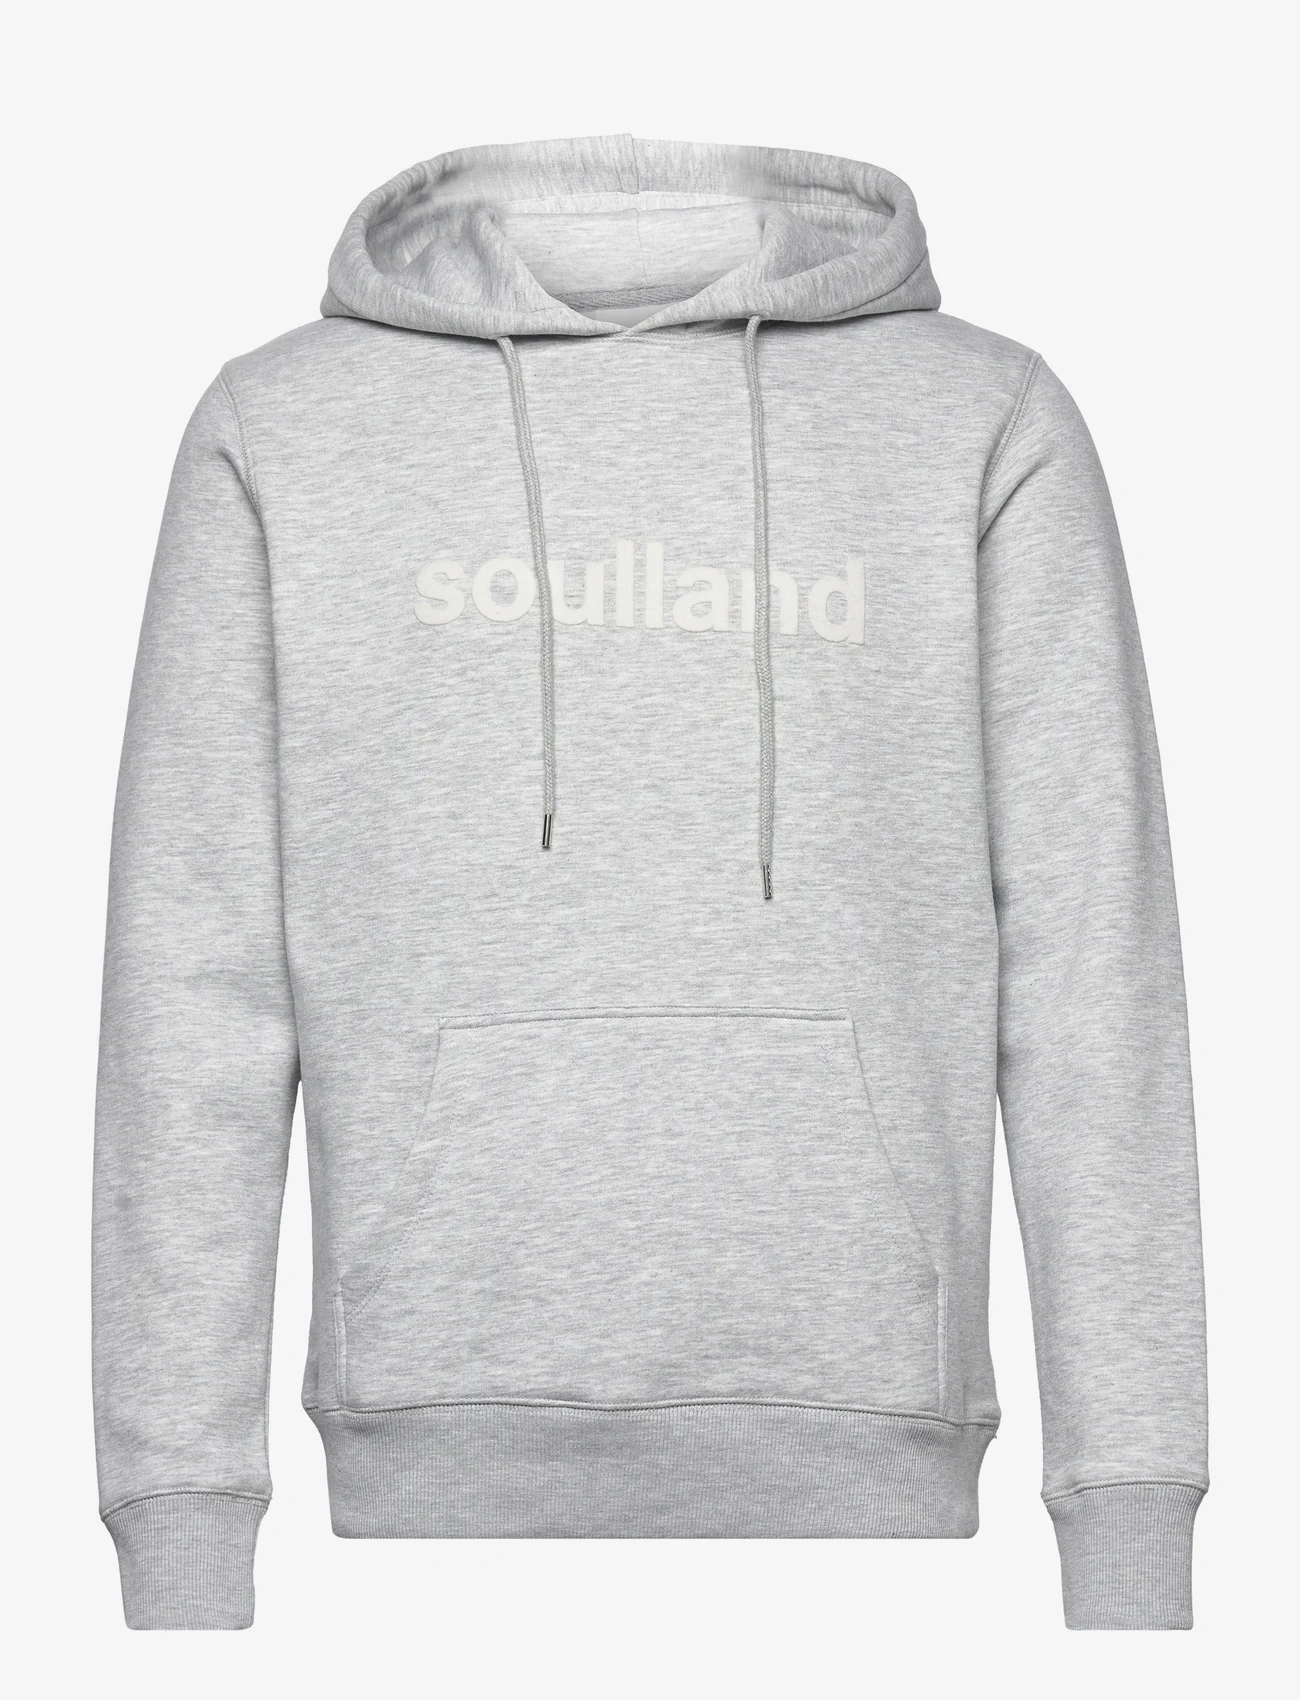 Soulland - Googie hoodie - kapuzenpullover - grey melange - 0